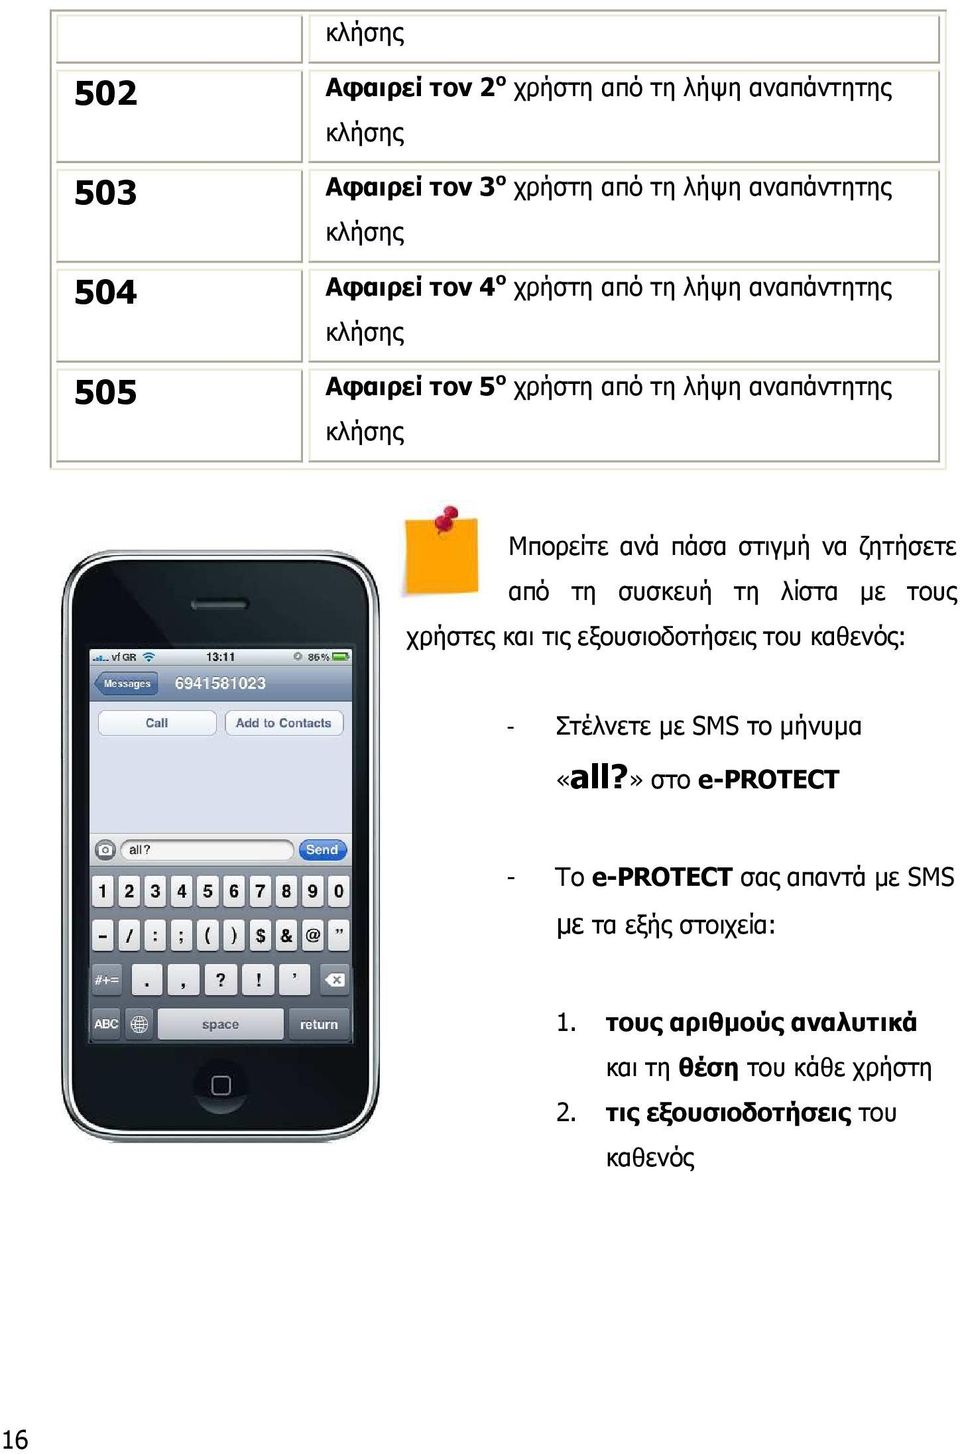 ζητήσετε από τη συσκευή τη λίστα µε τους χρήστες και τις εξουσιοδοτήσεις του καθενός: - Στέλνετε µε SMS το µήνυµα «all?